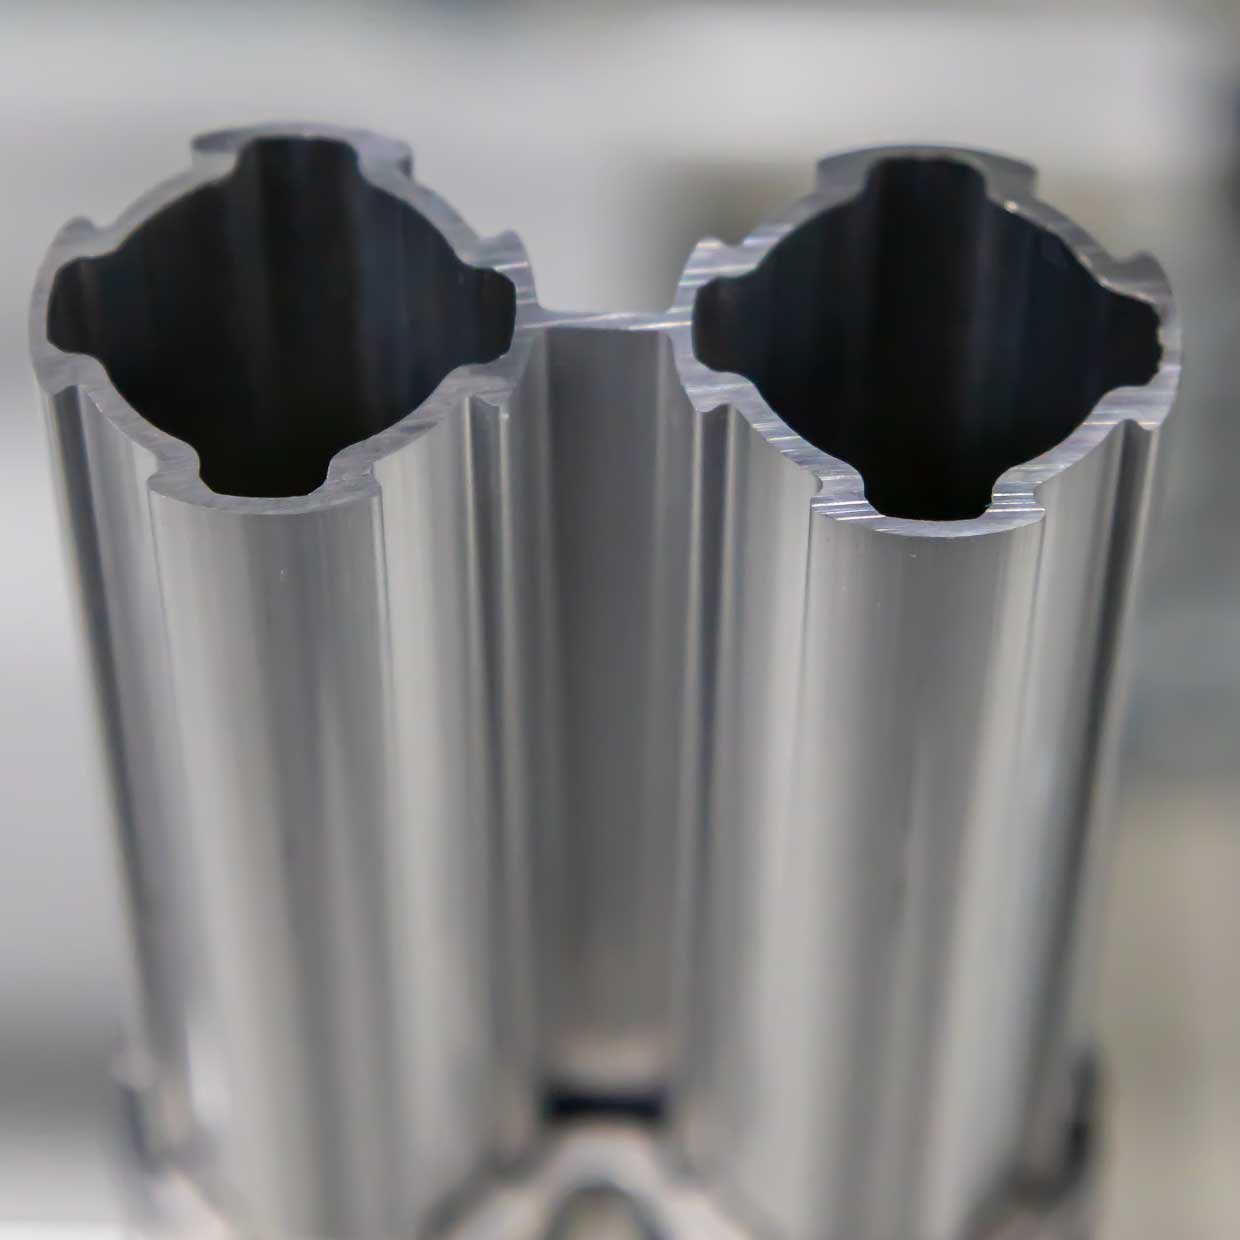 Țevi profilate duble din aluminiu cu diametrul de 28 mm